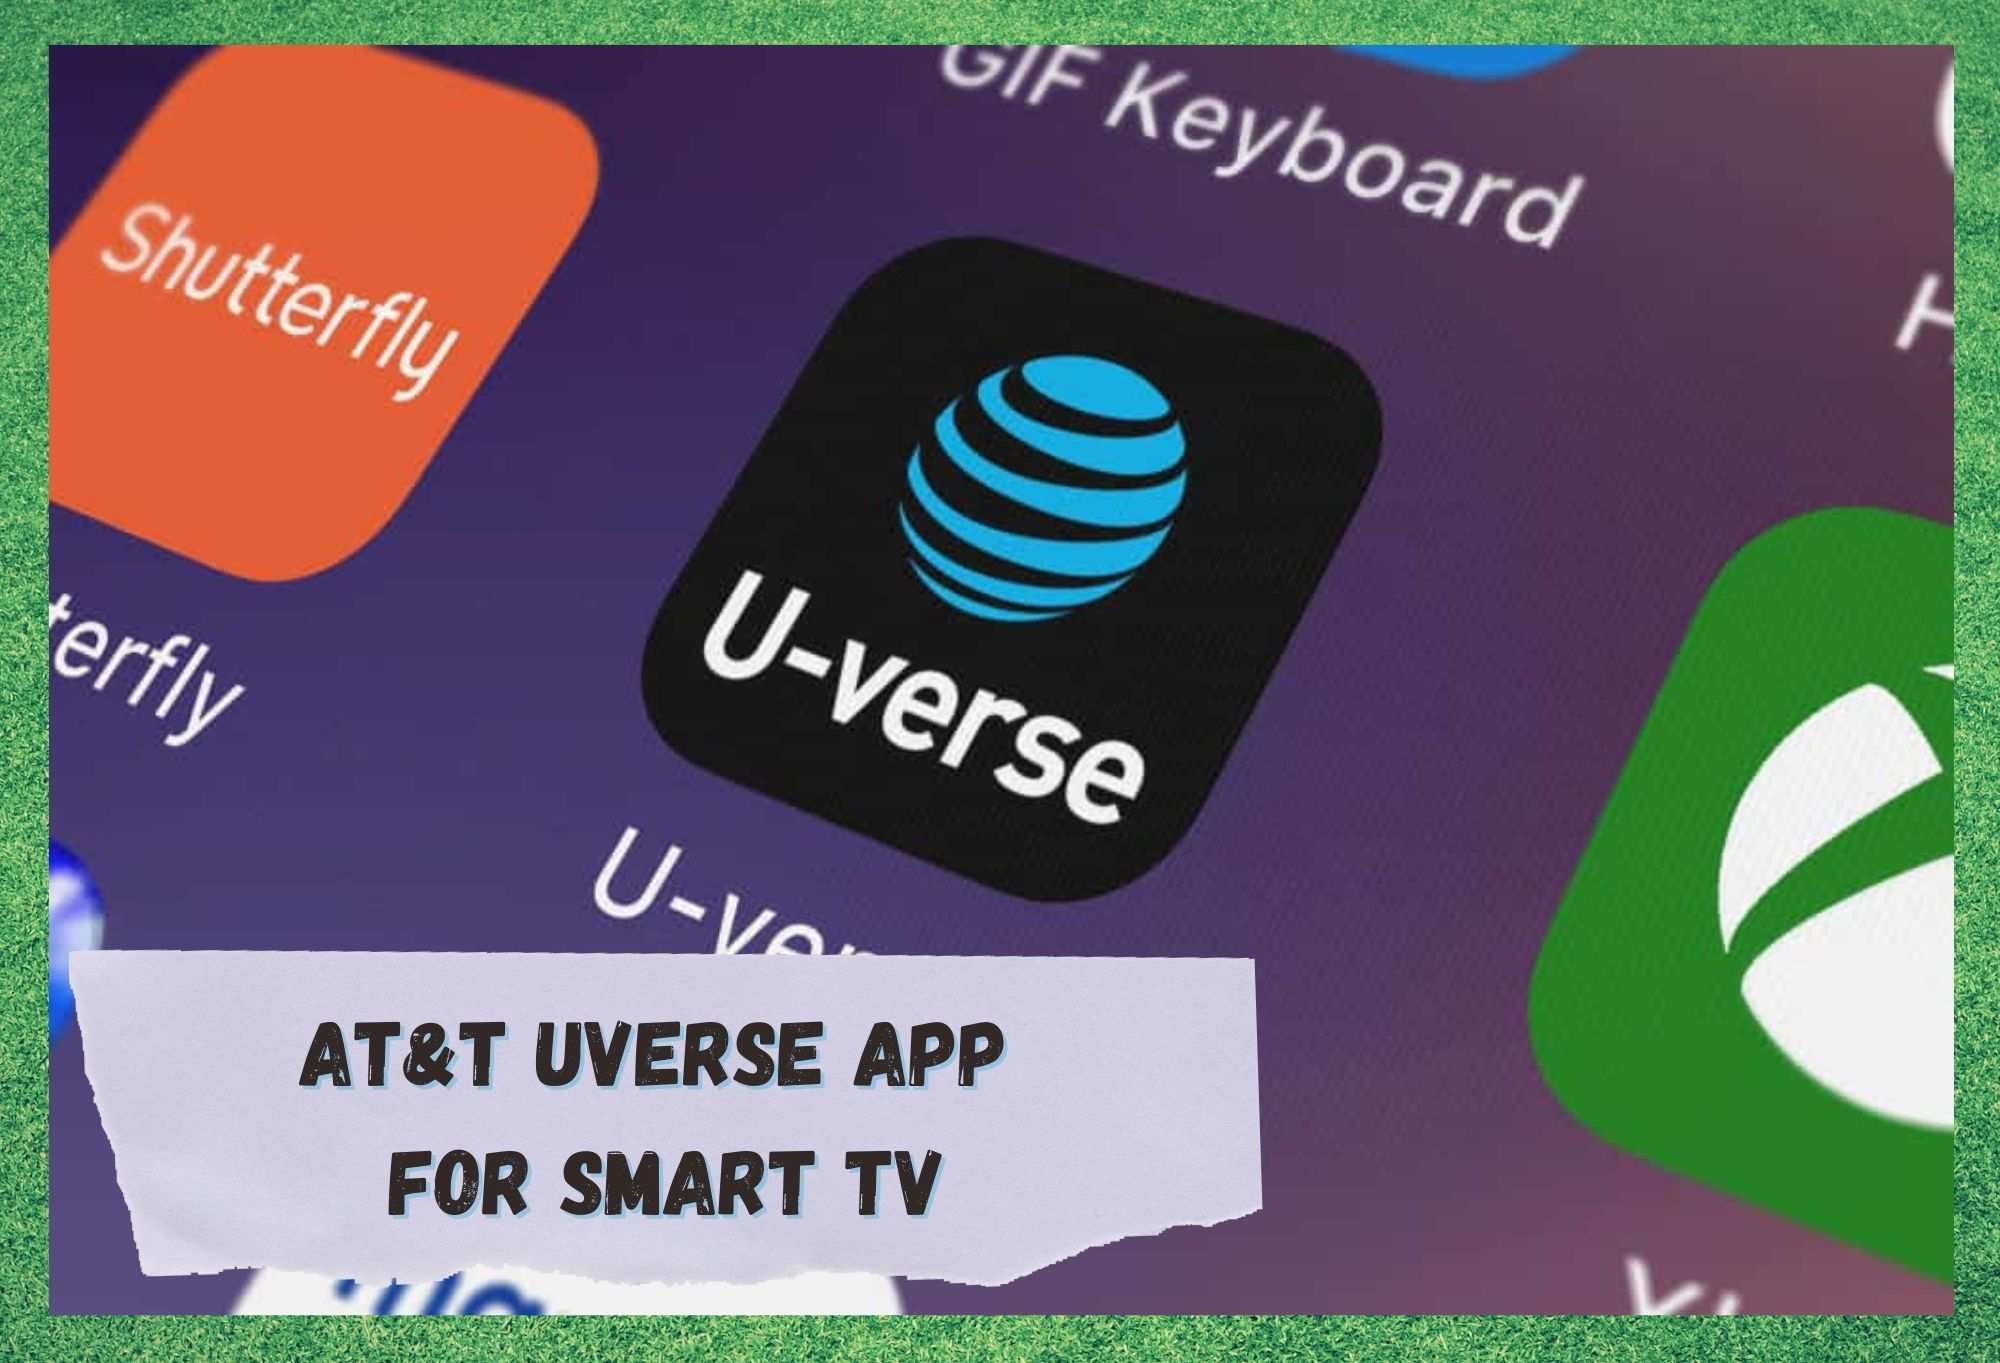 att uverse app for smart tv